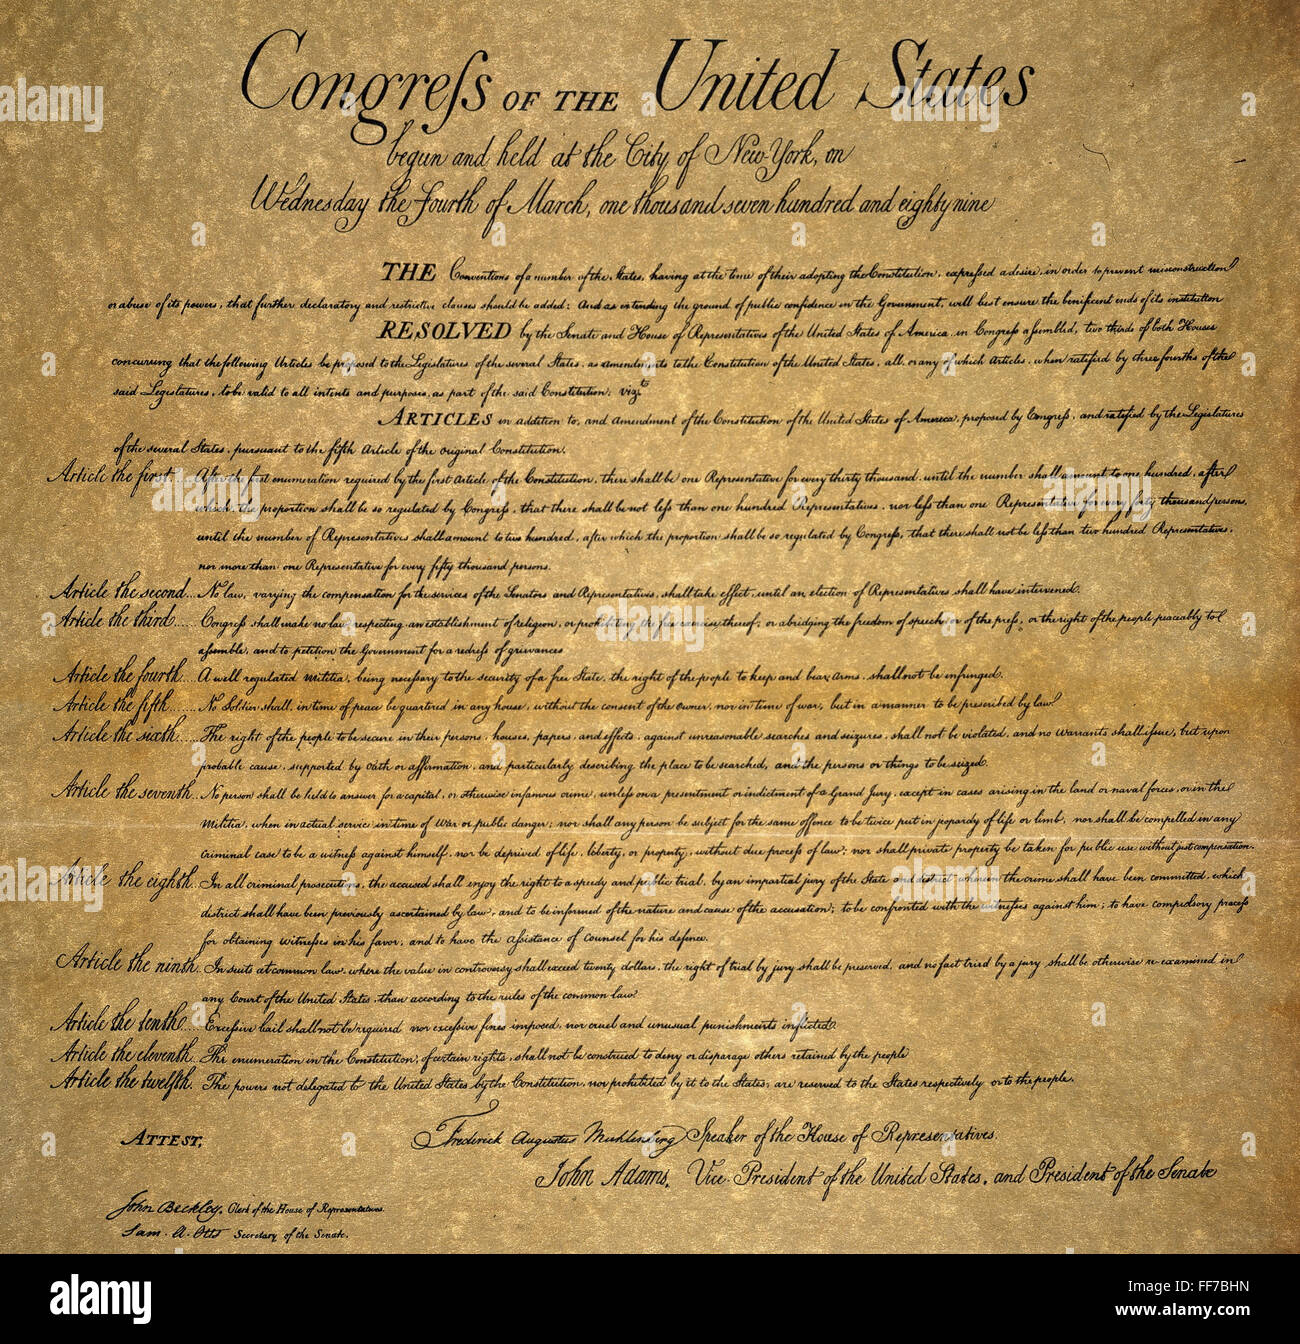 La carta de derechos, de 1789. Foto de stock